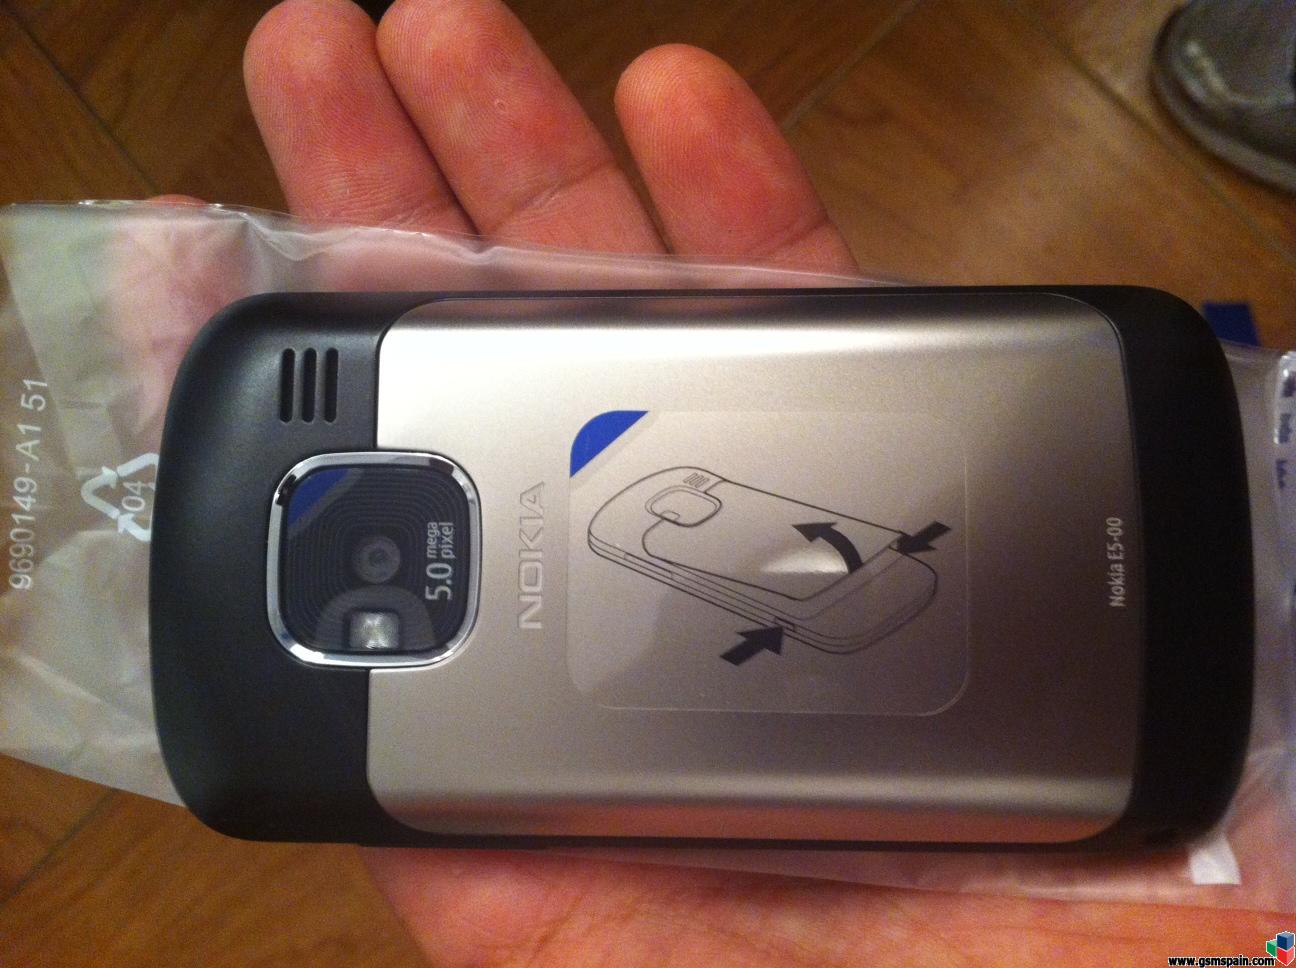 [VENDO] Nokia e5 Vodafone,nuevo,sin estrenar,nunca se ha encendido.GPS,WIFI,5mpx.130 G.I.